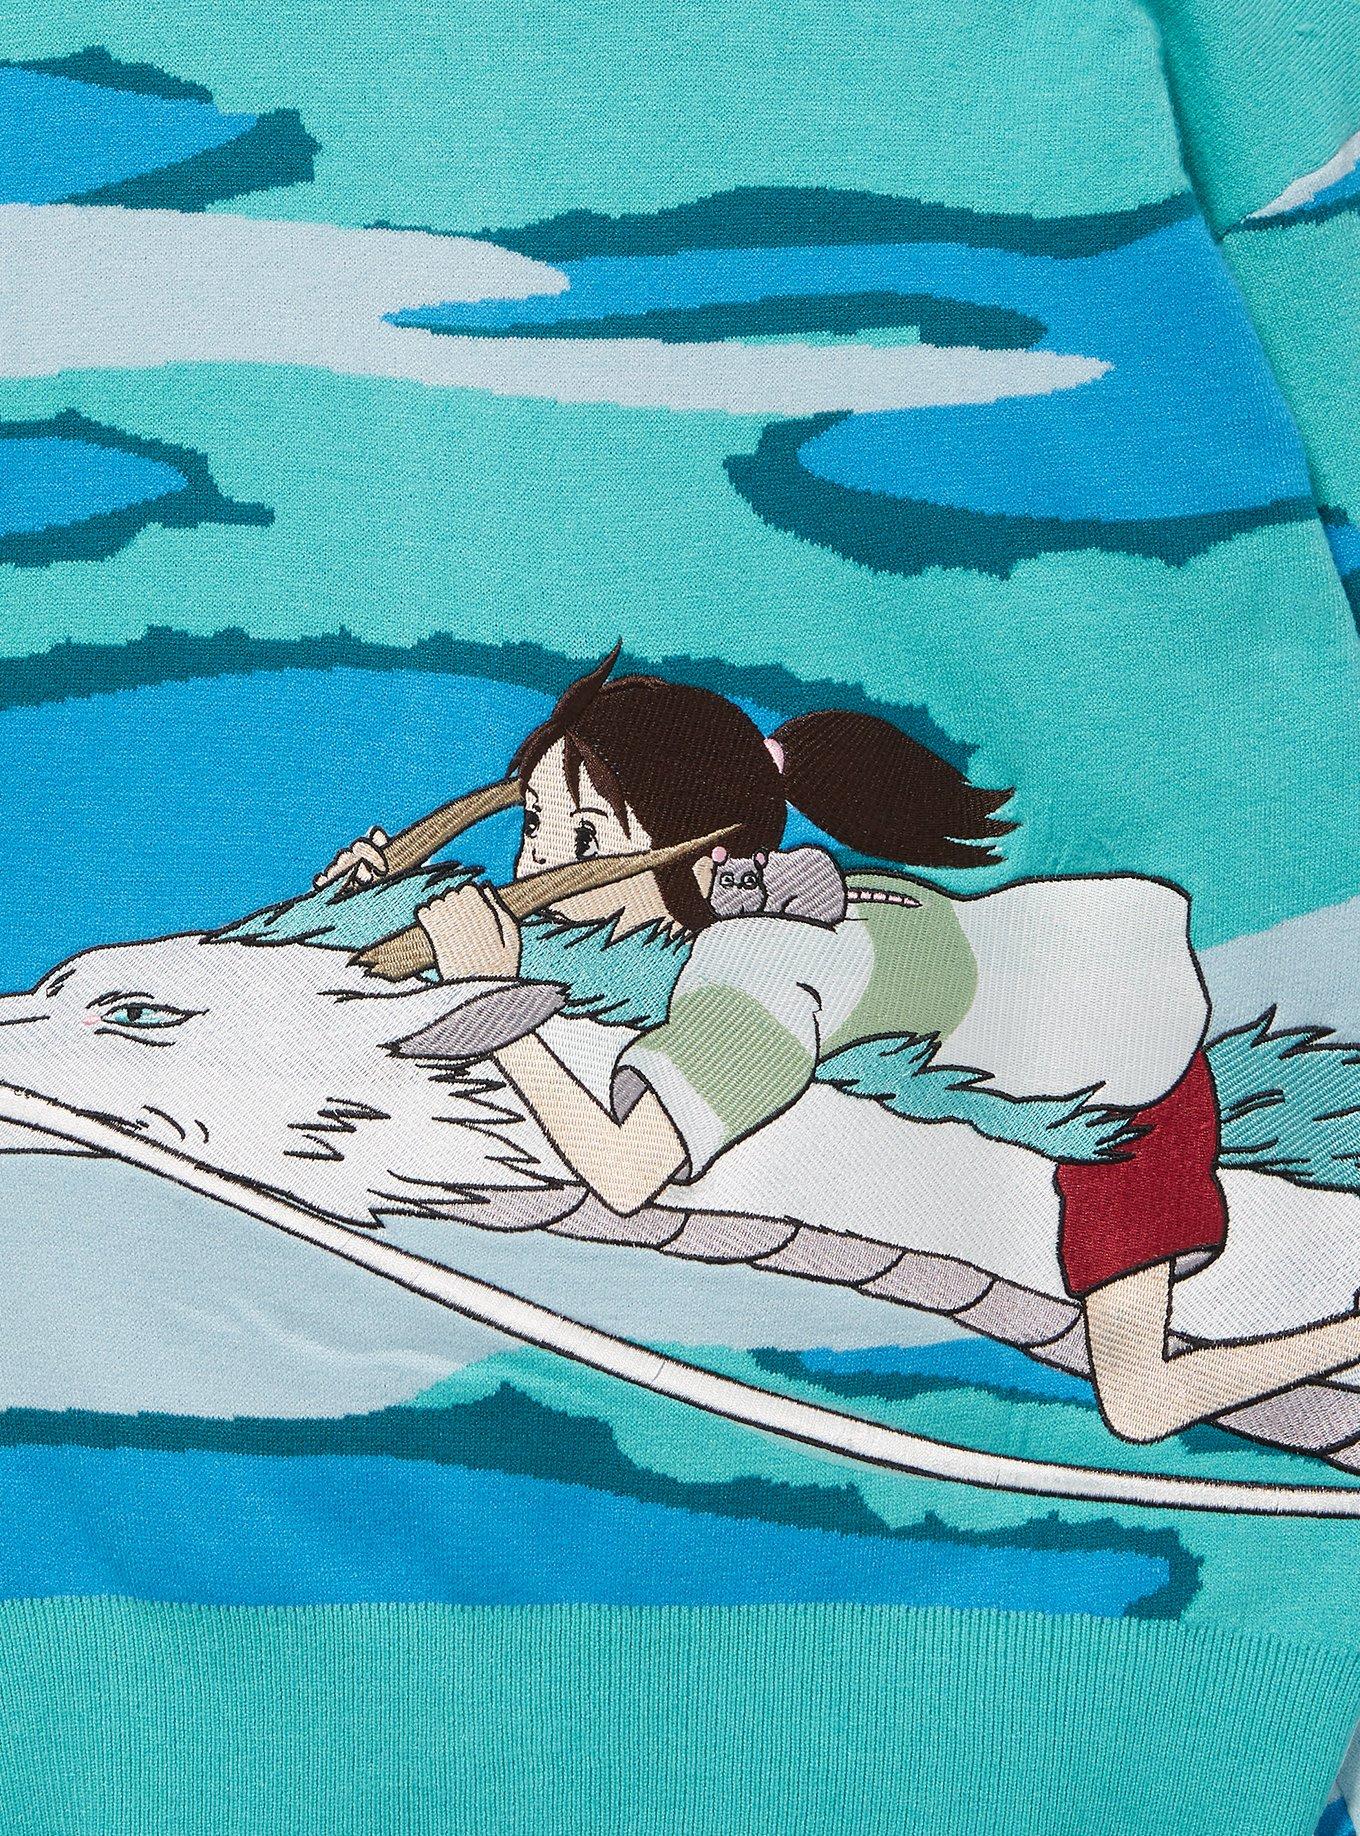 Studio Ghibli Spirited Away Chihiro & Haku Scenic Cardigan - BoxLunch Exclusive, MULTI, alternate